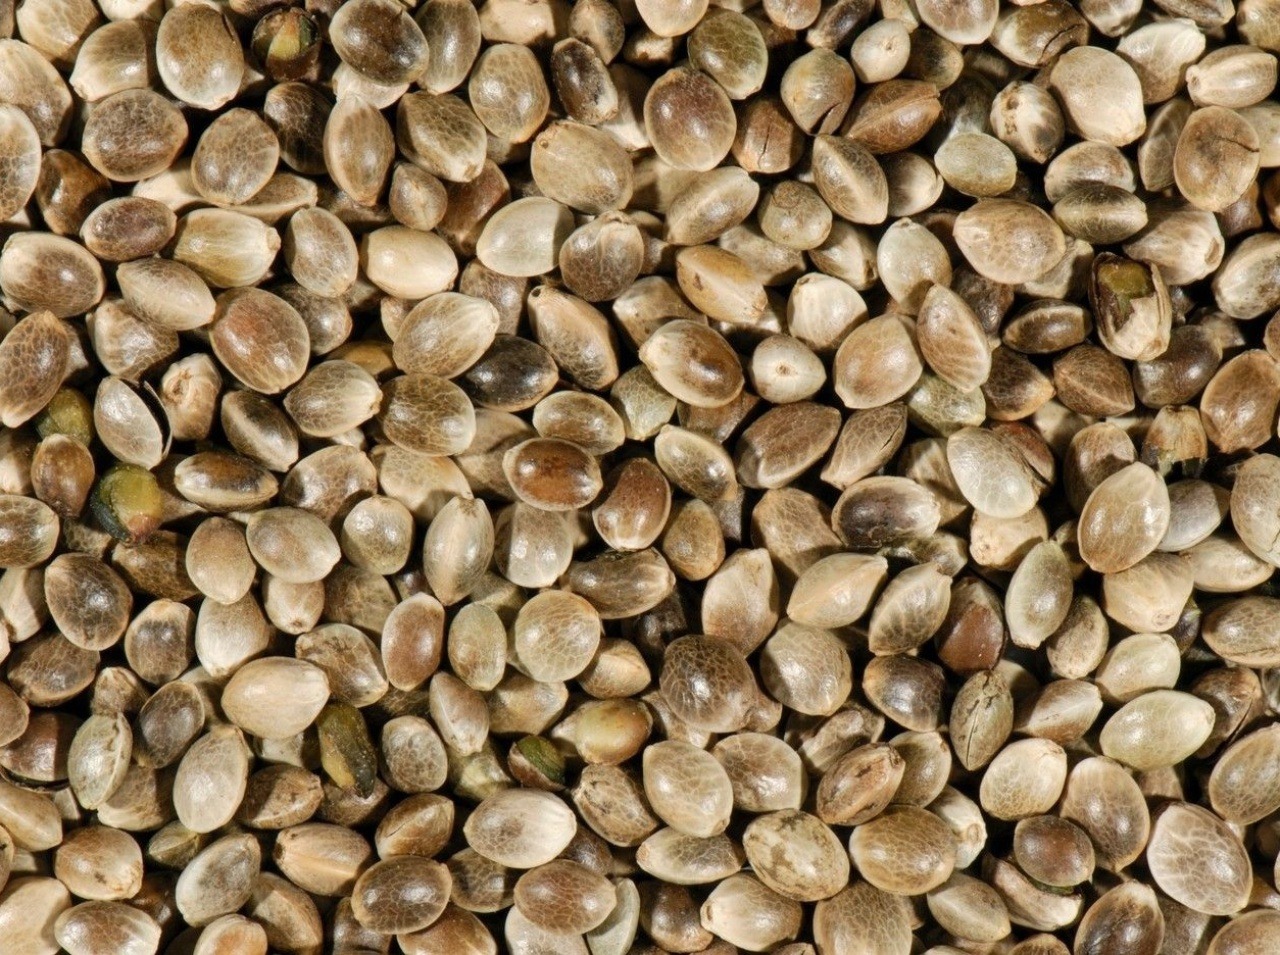 Semená konopy siatej majú vypadnúť zo zoznamu omamných látok.